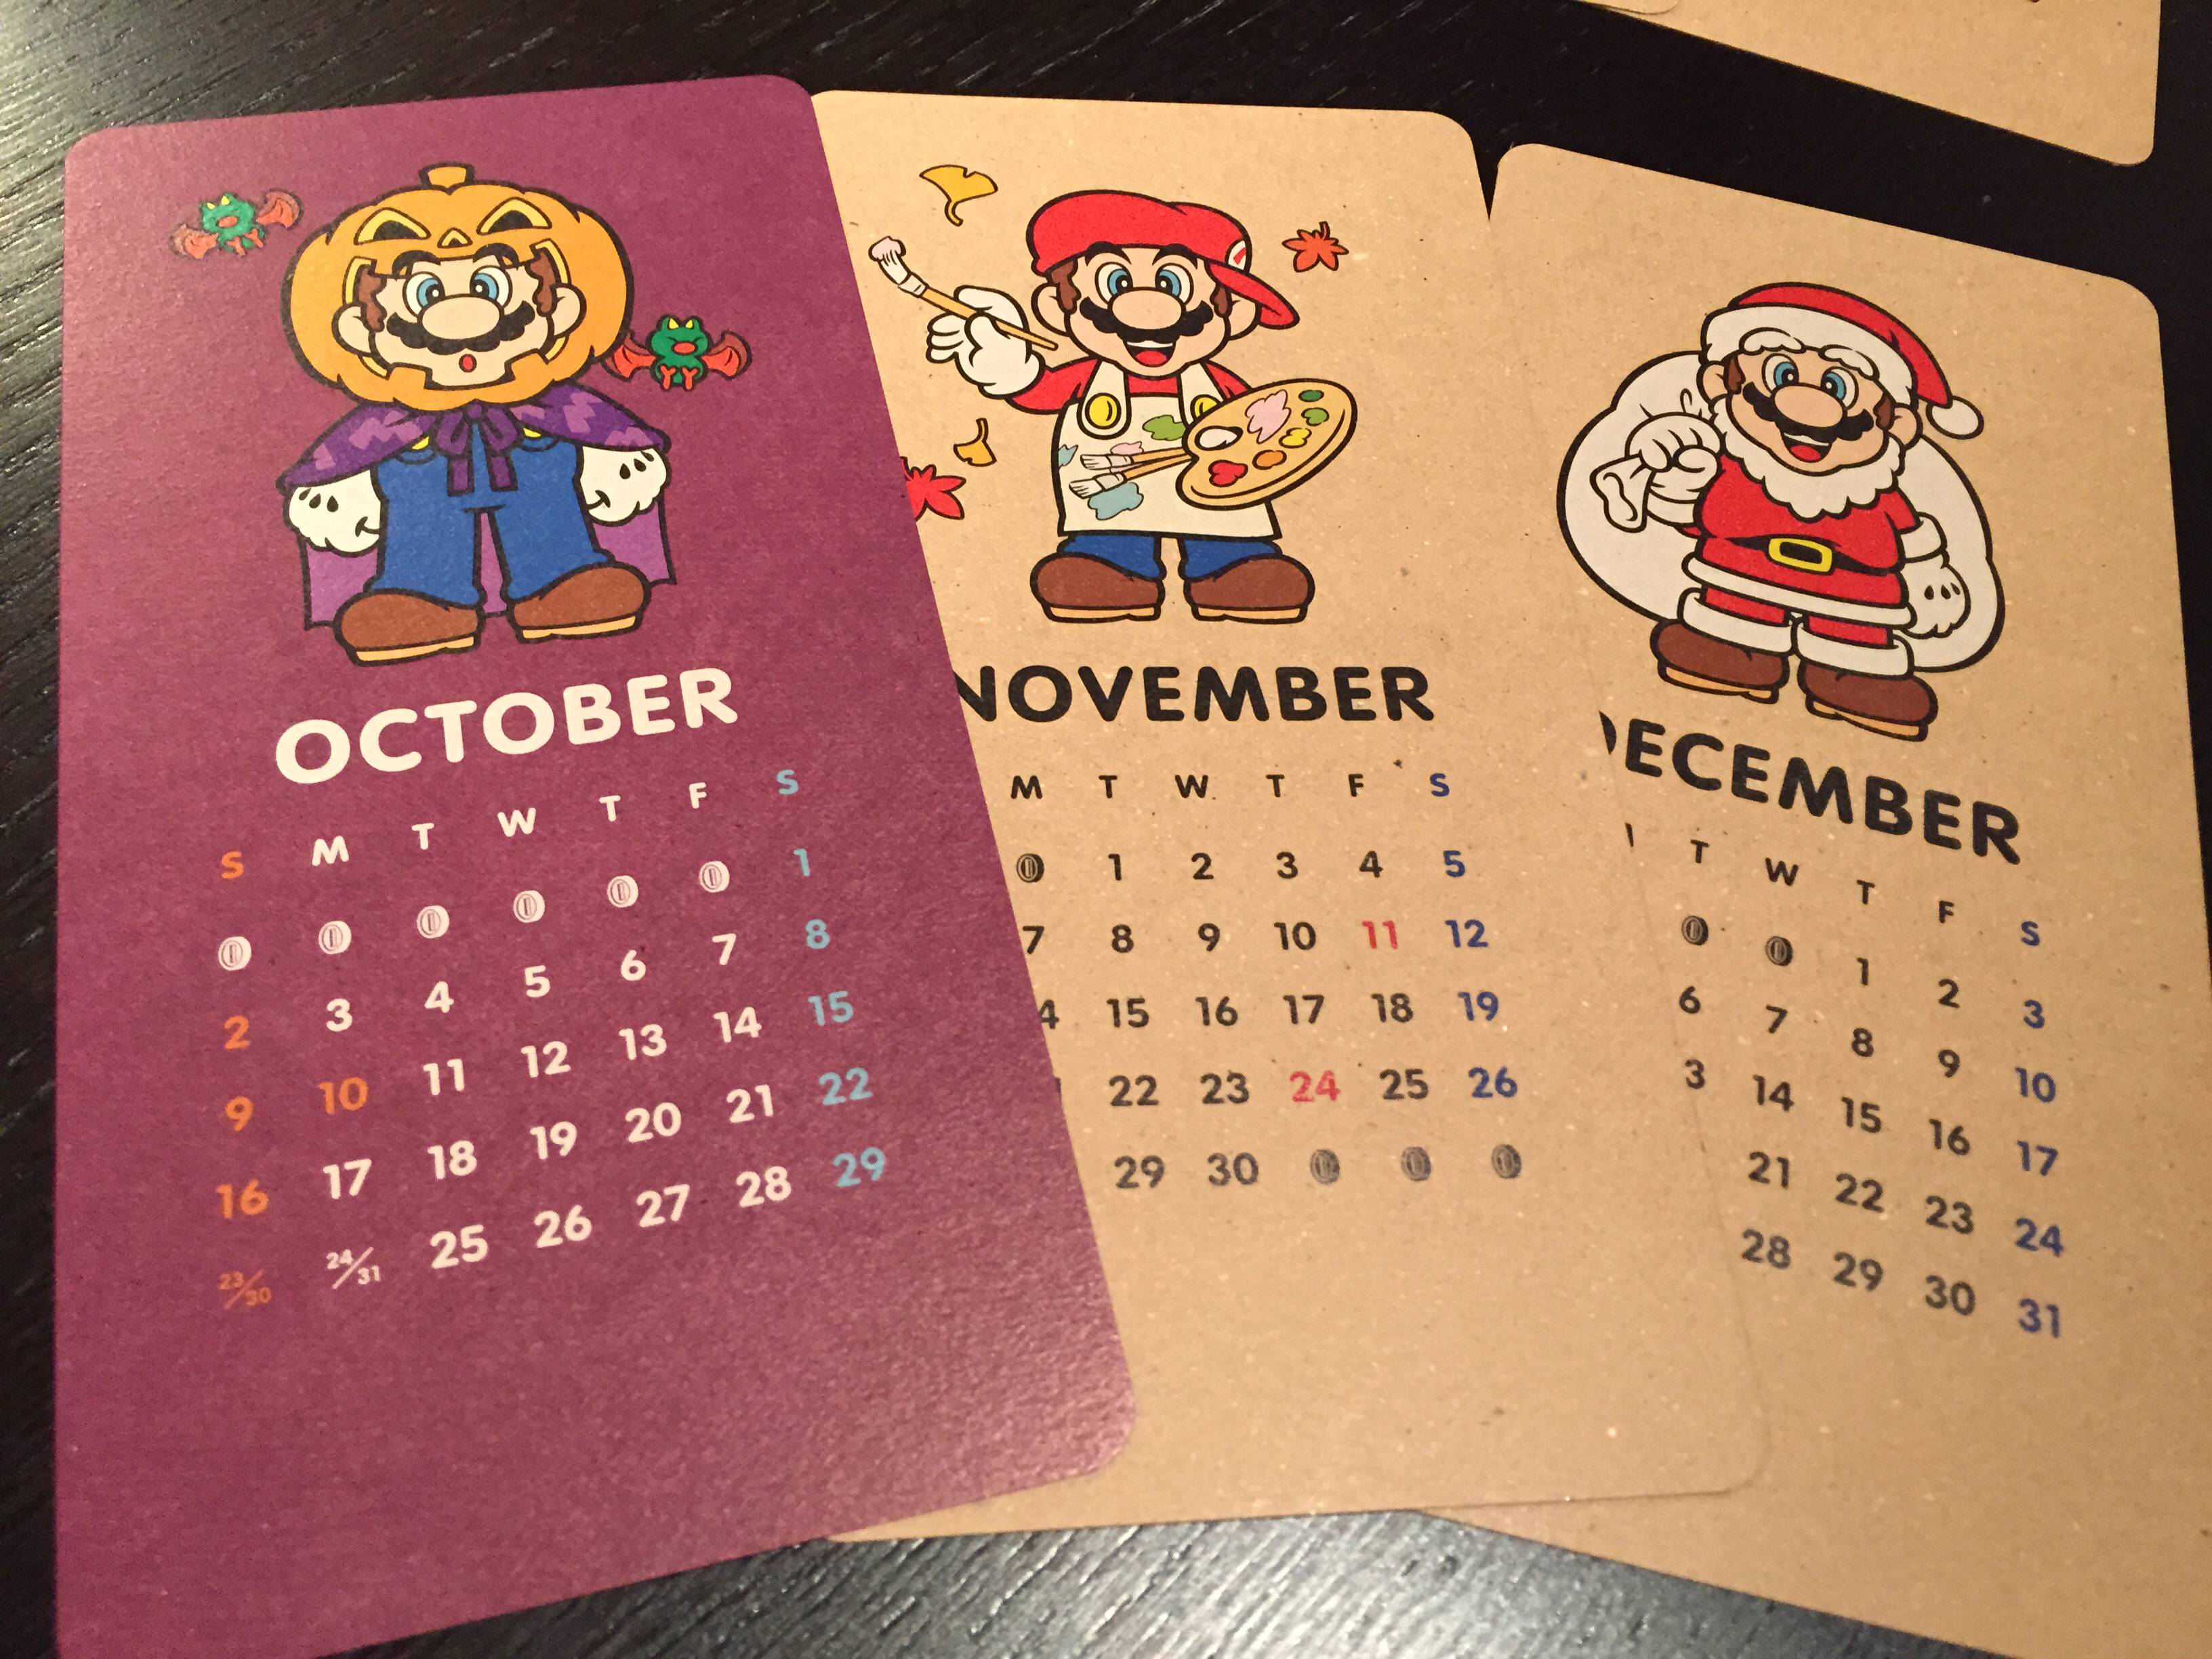 5-Club-Nintendo-Calendar-2016